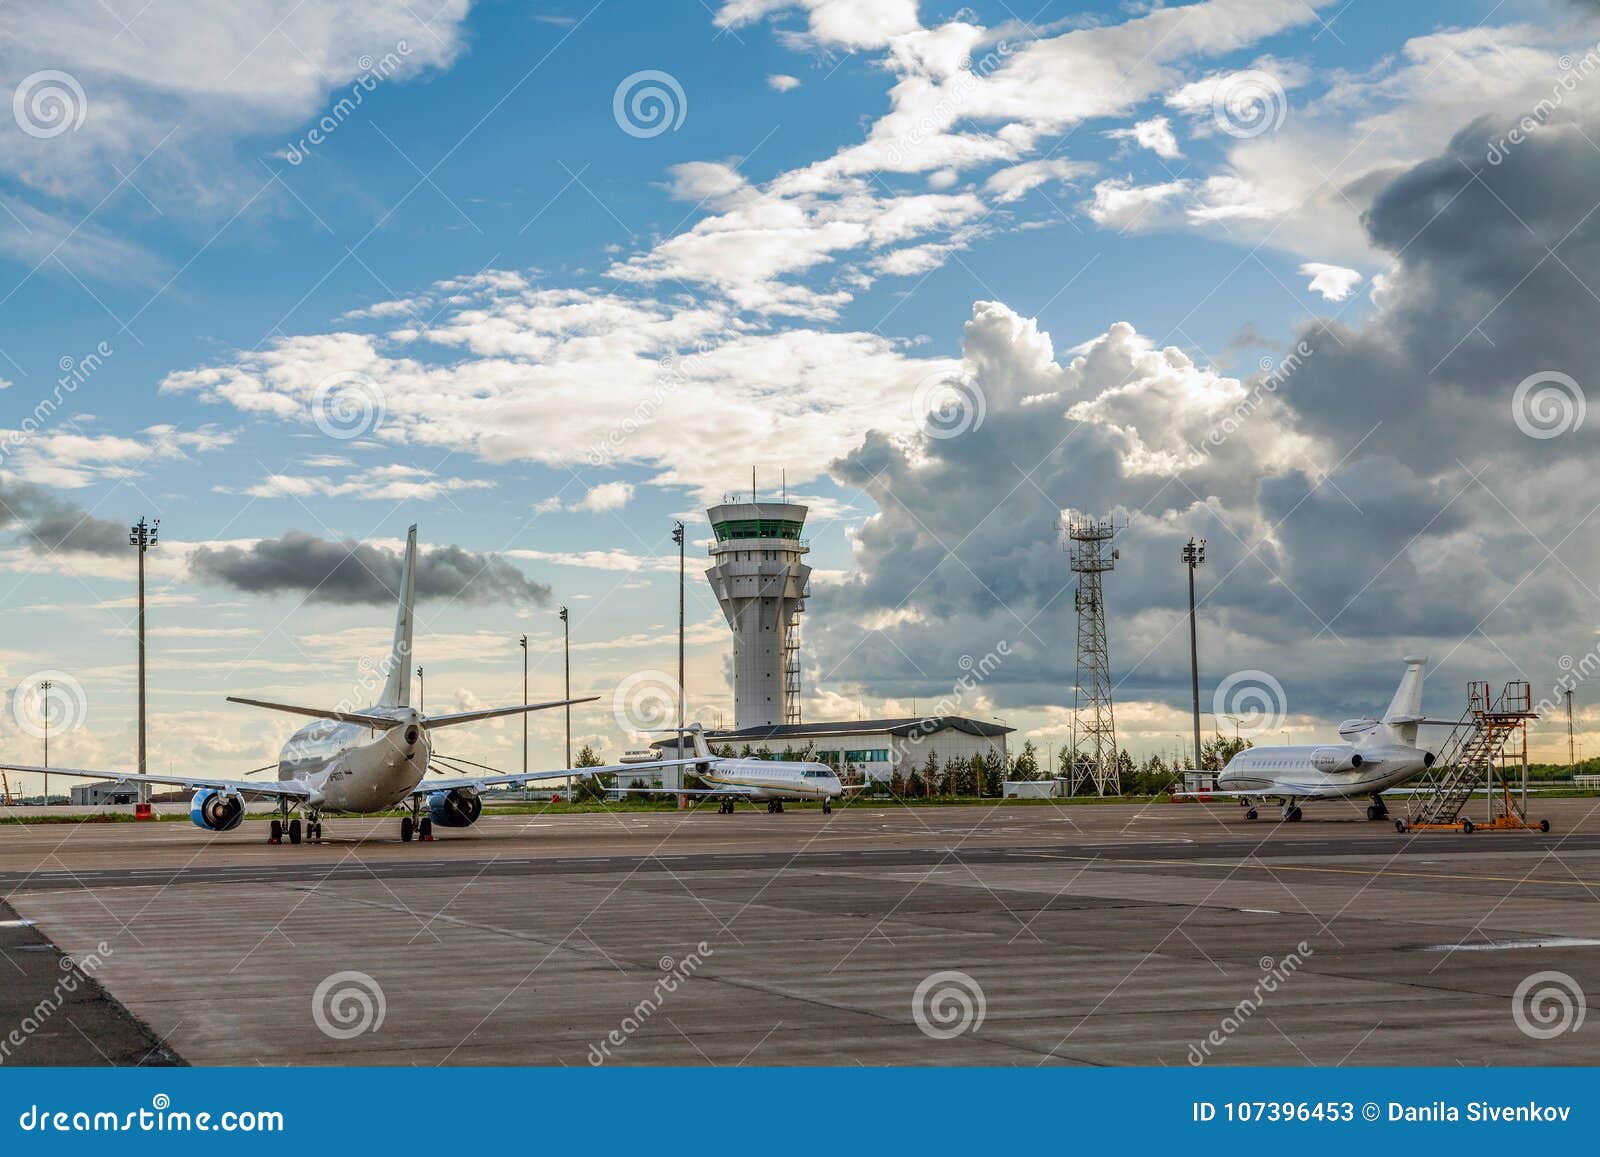 2018年8月1日 : 阿拉木图国际机场哈萨克斯塔夜景 编辑类库存照片 - 图片 包括有 终端, 乘客: 223626223